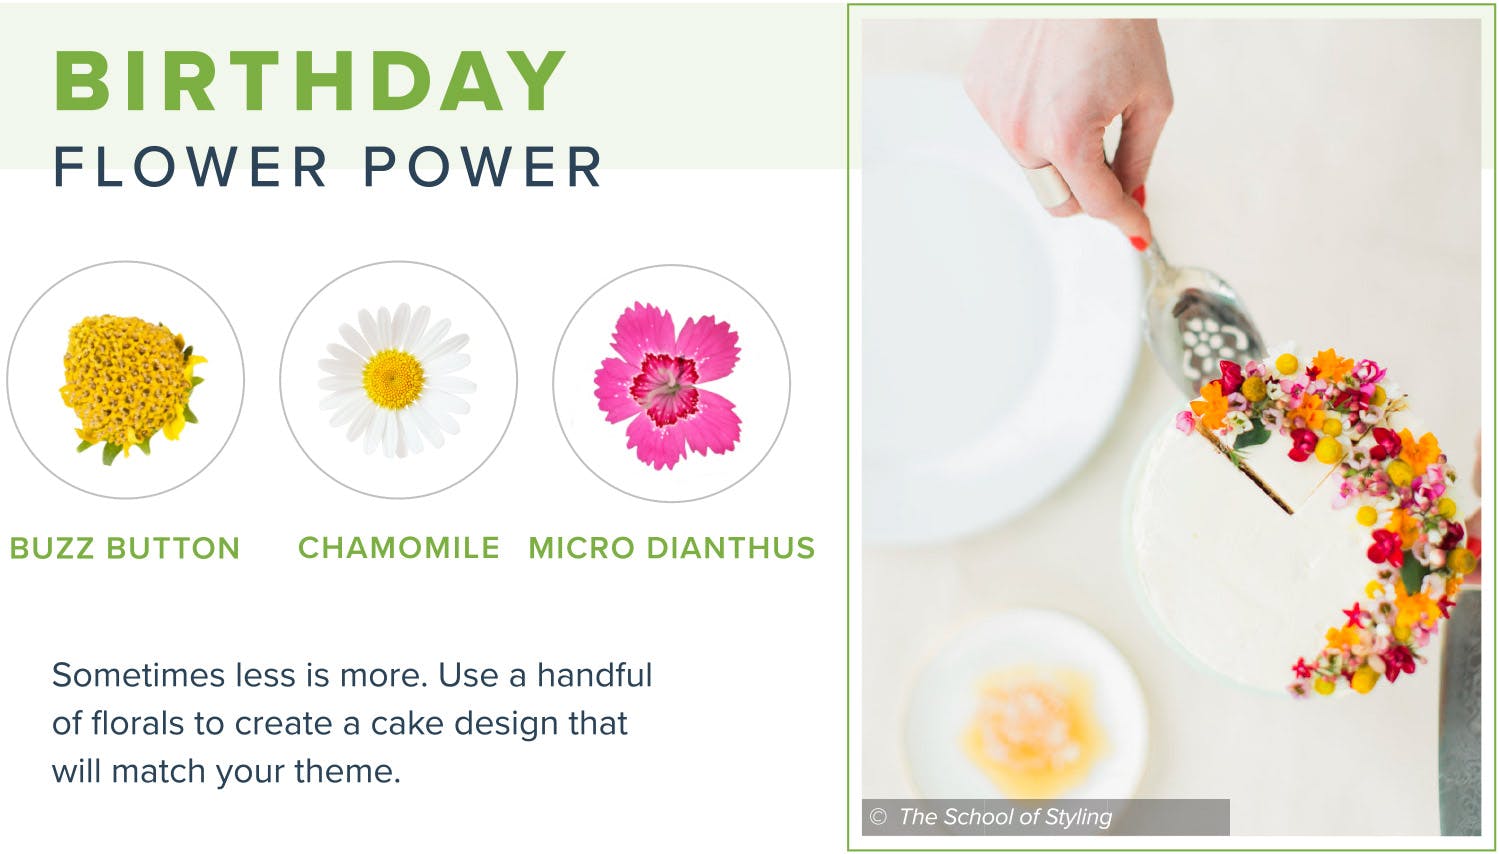 edible-flowers-birthday-flower-power